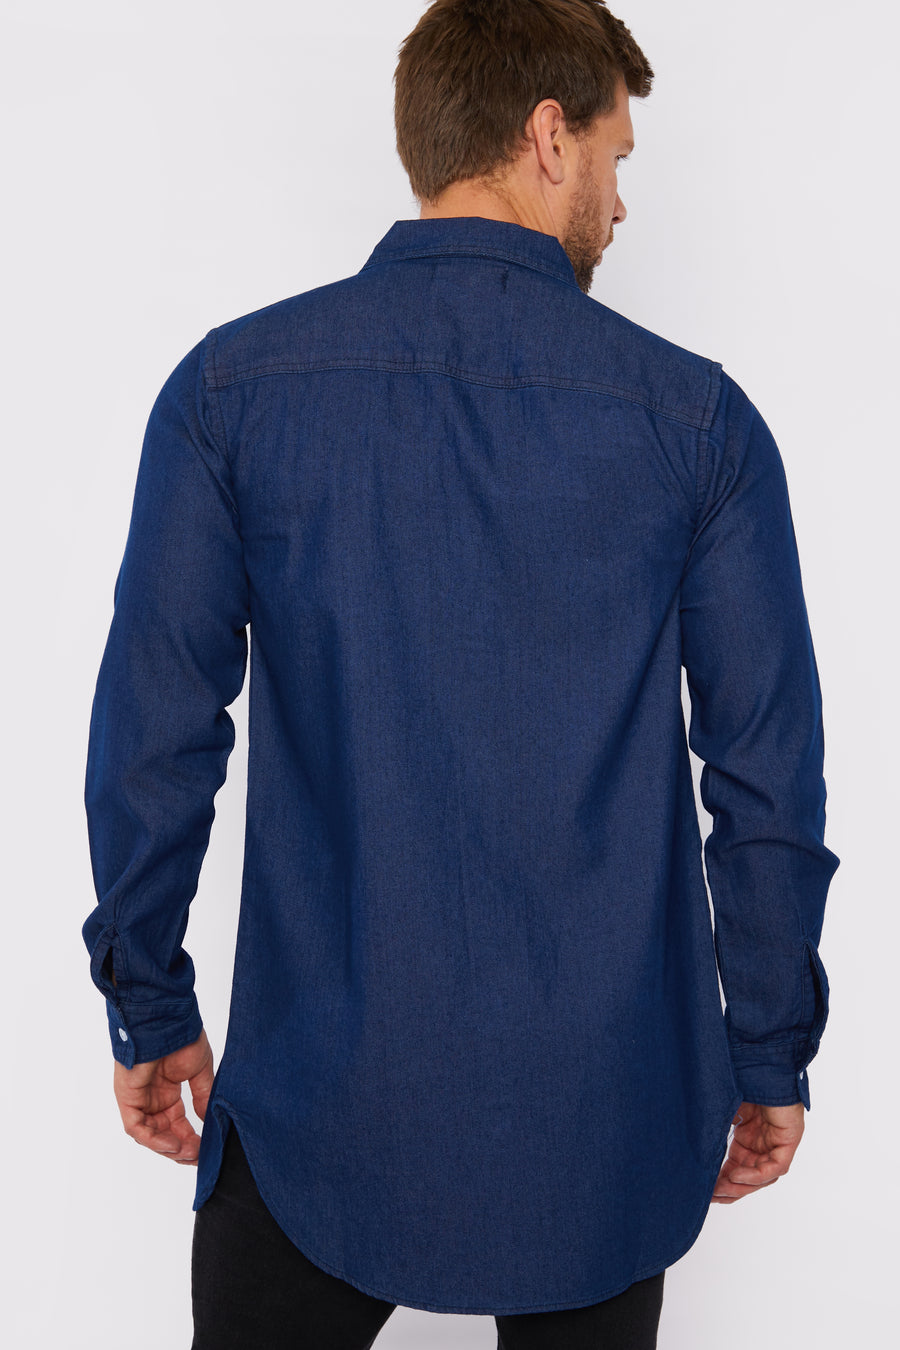 Body back shot of a standing male model wearing a JMOJO Dark Blue Slim Fit Longline Denim Shirt